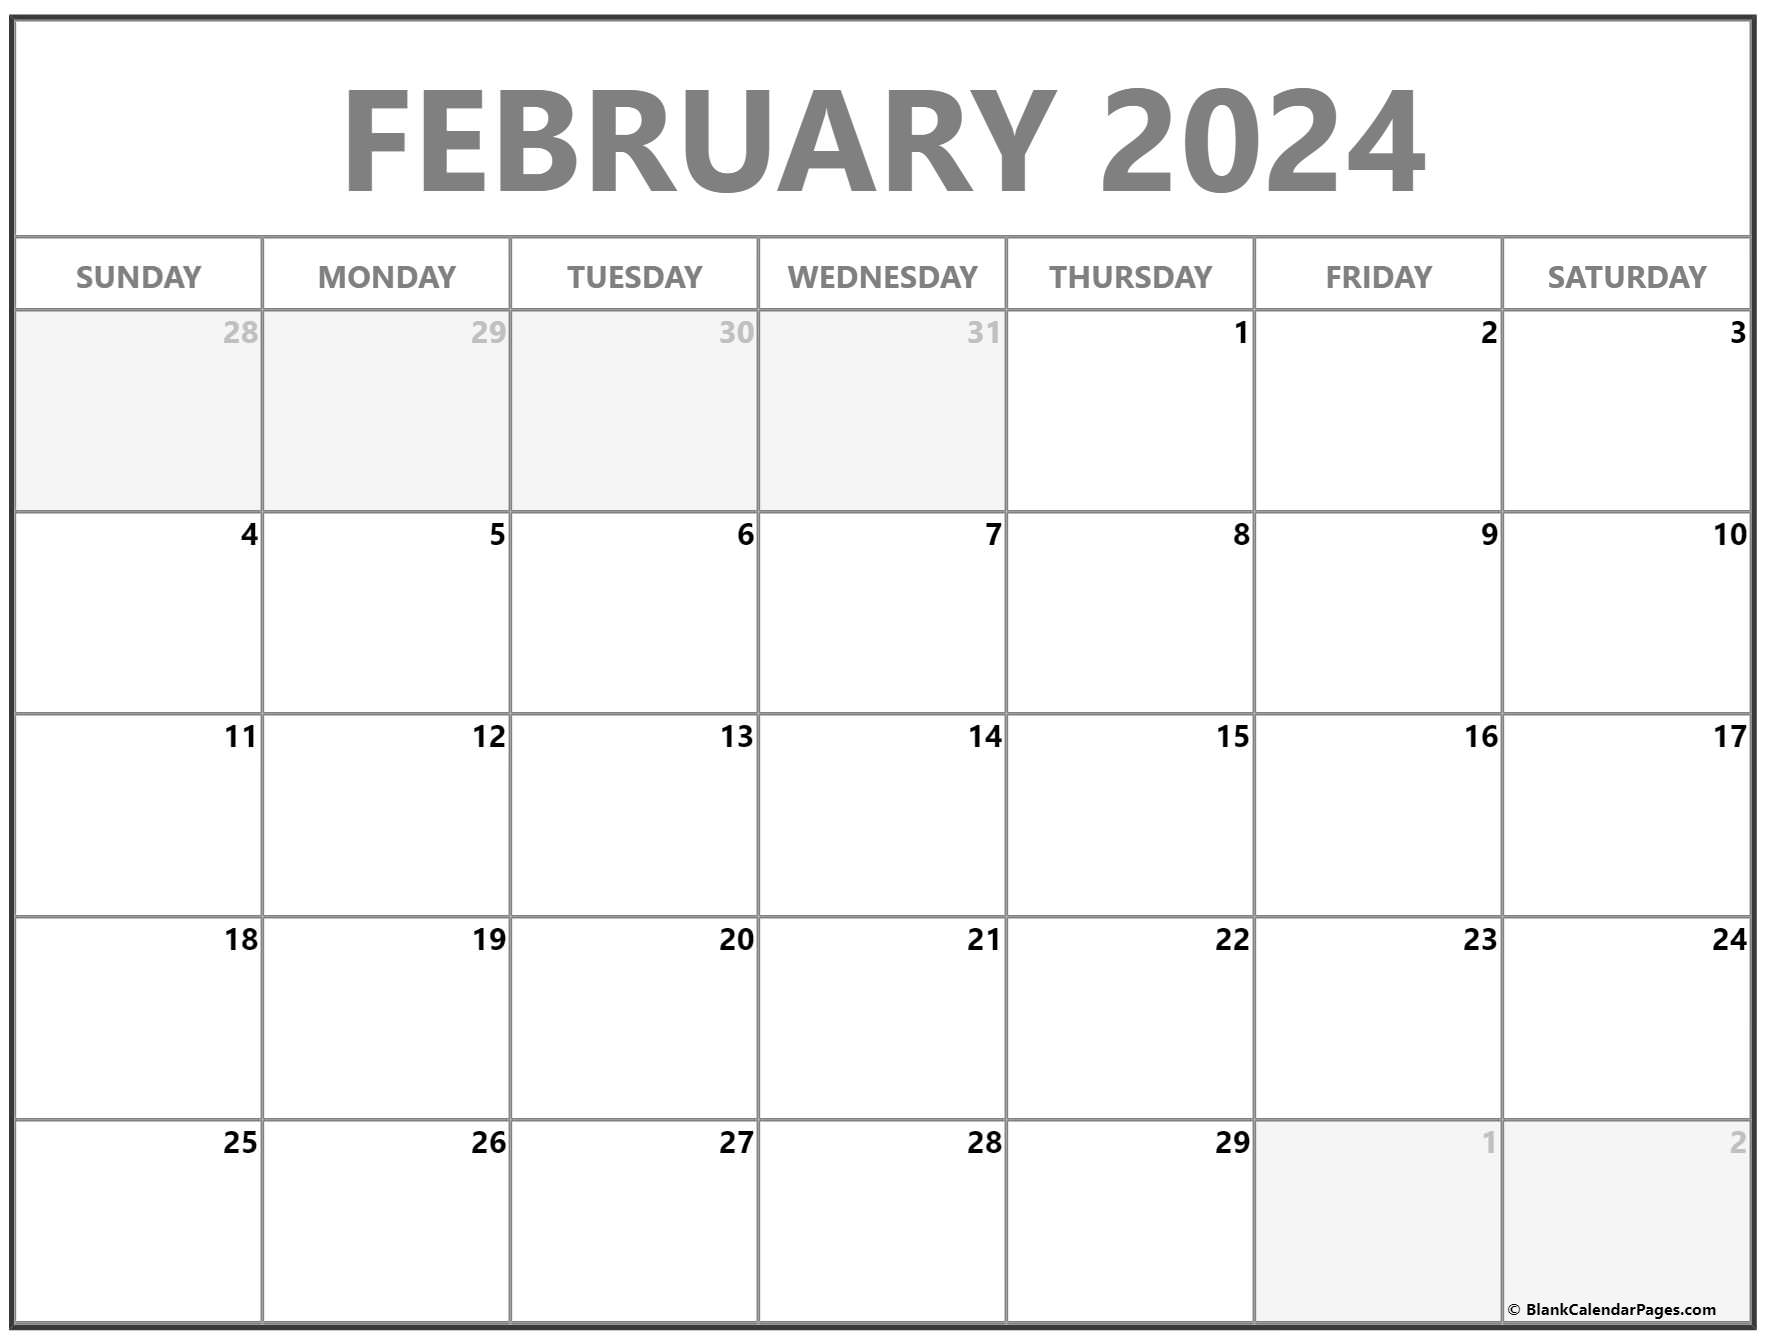 February 2022 calendar free printable calendar